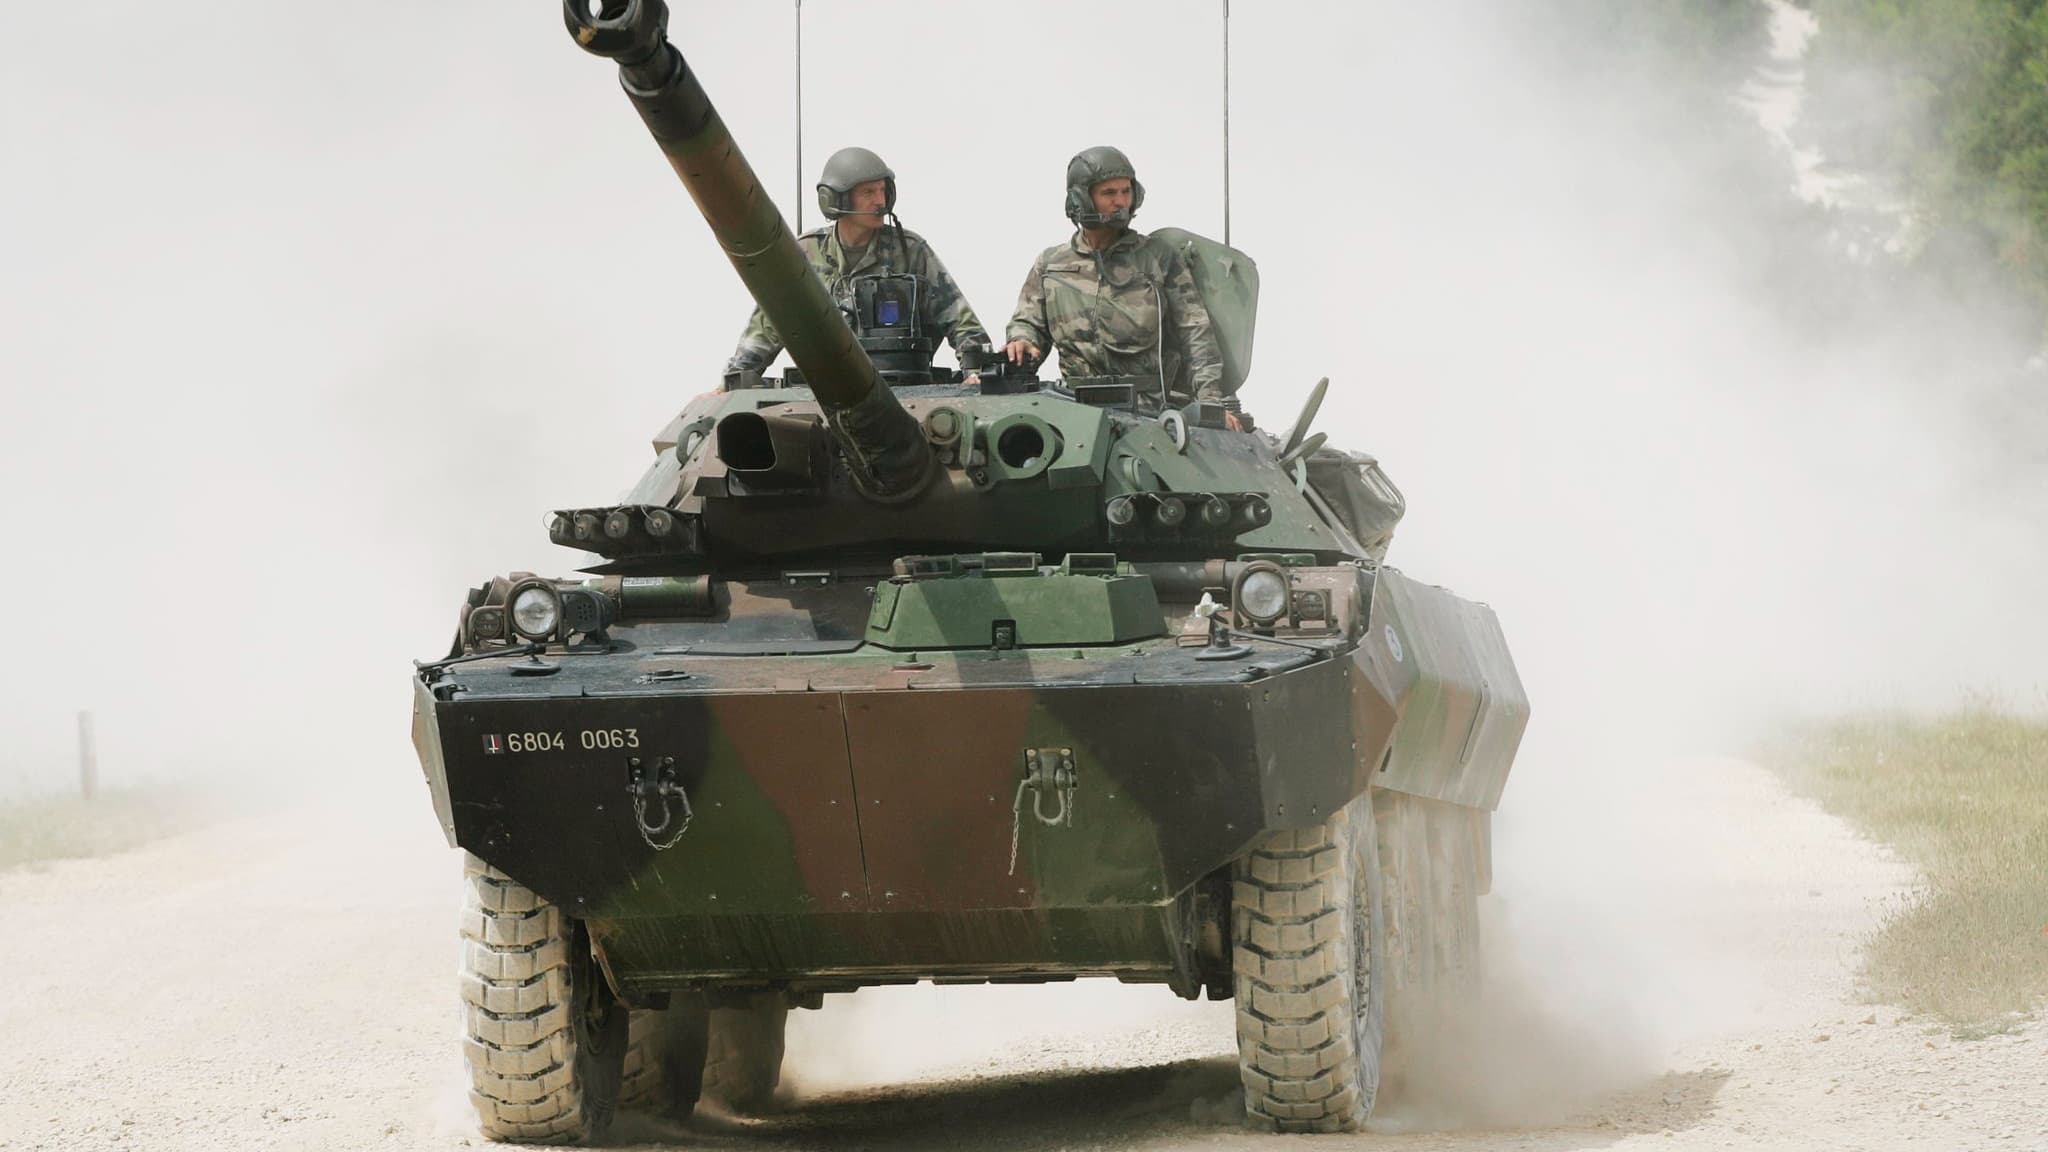 Guerre en Ukraine : qu'est-ce que le char de combat léger AMX-10